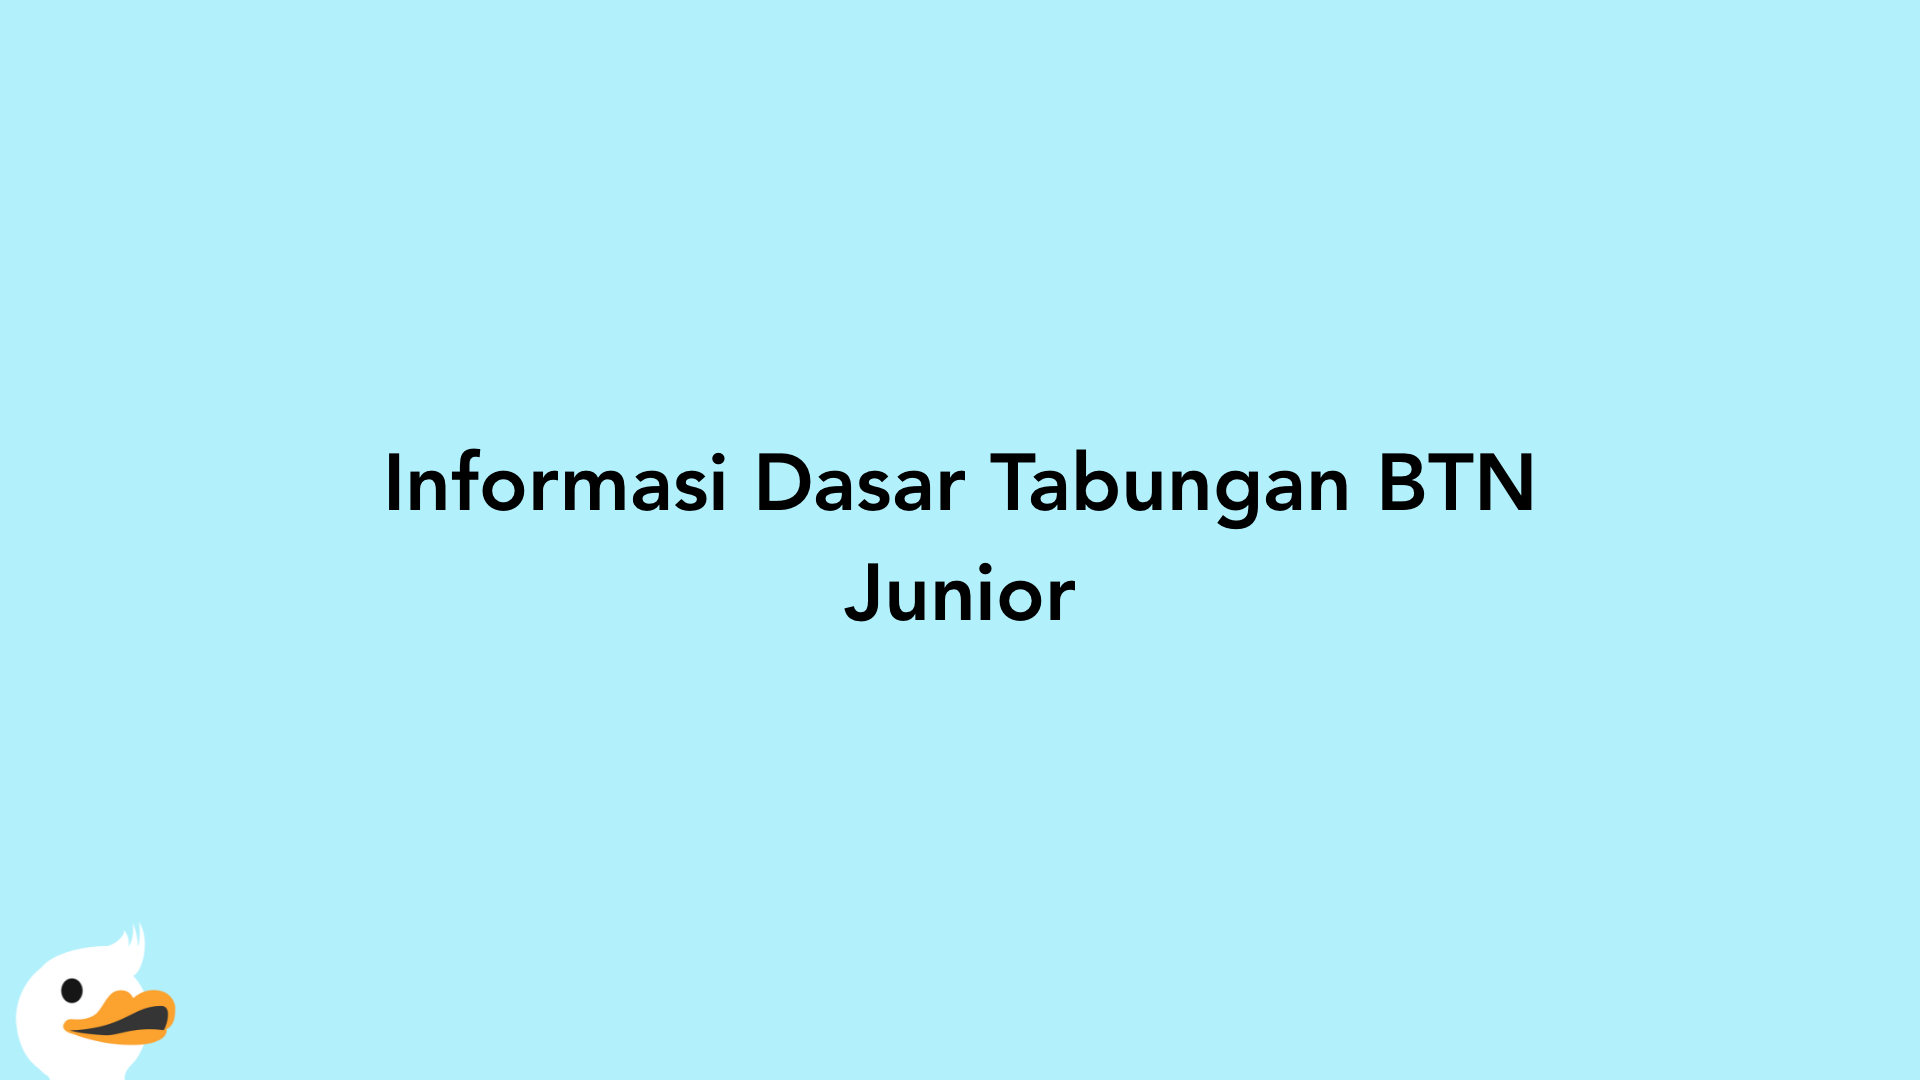 Informasi Dasar Tabungan BTN Junior